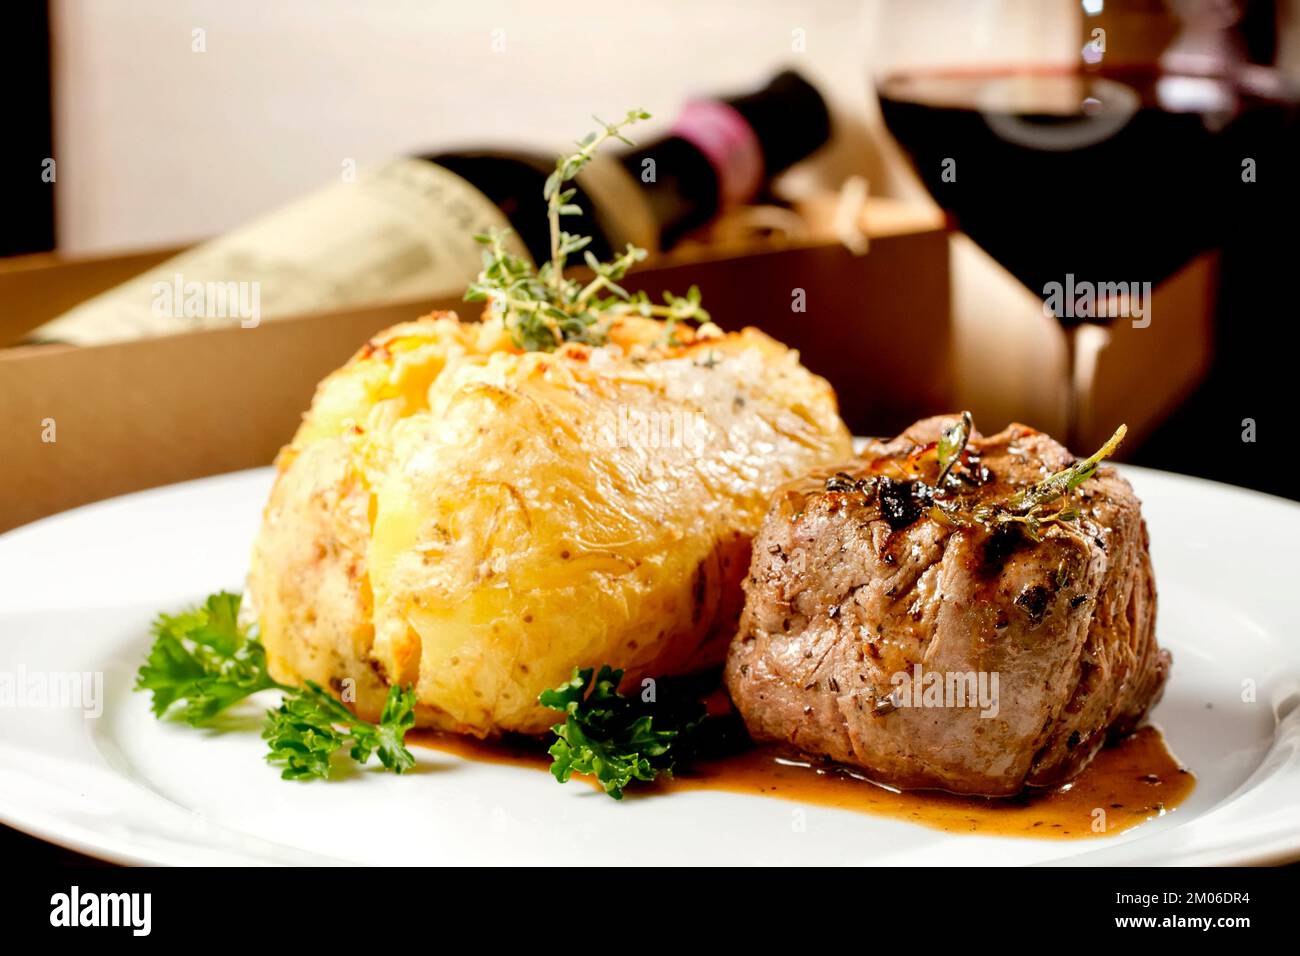 Filet Mignon Rindersteak mit Soße und gefüllter Kartoffel, serviert auf einem Teller, kombiniert mit Rotweinglas und Flasche. Erstklassiges Restaurant Gourmet-Essen Stockfoto